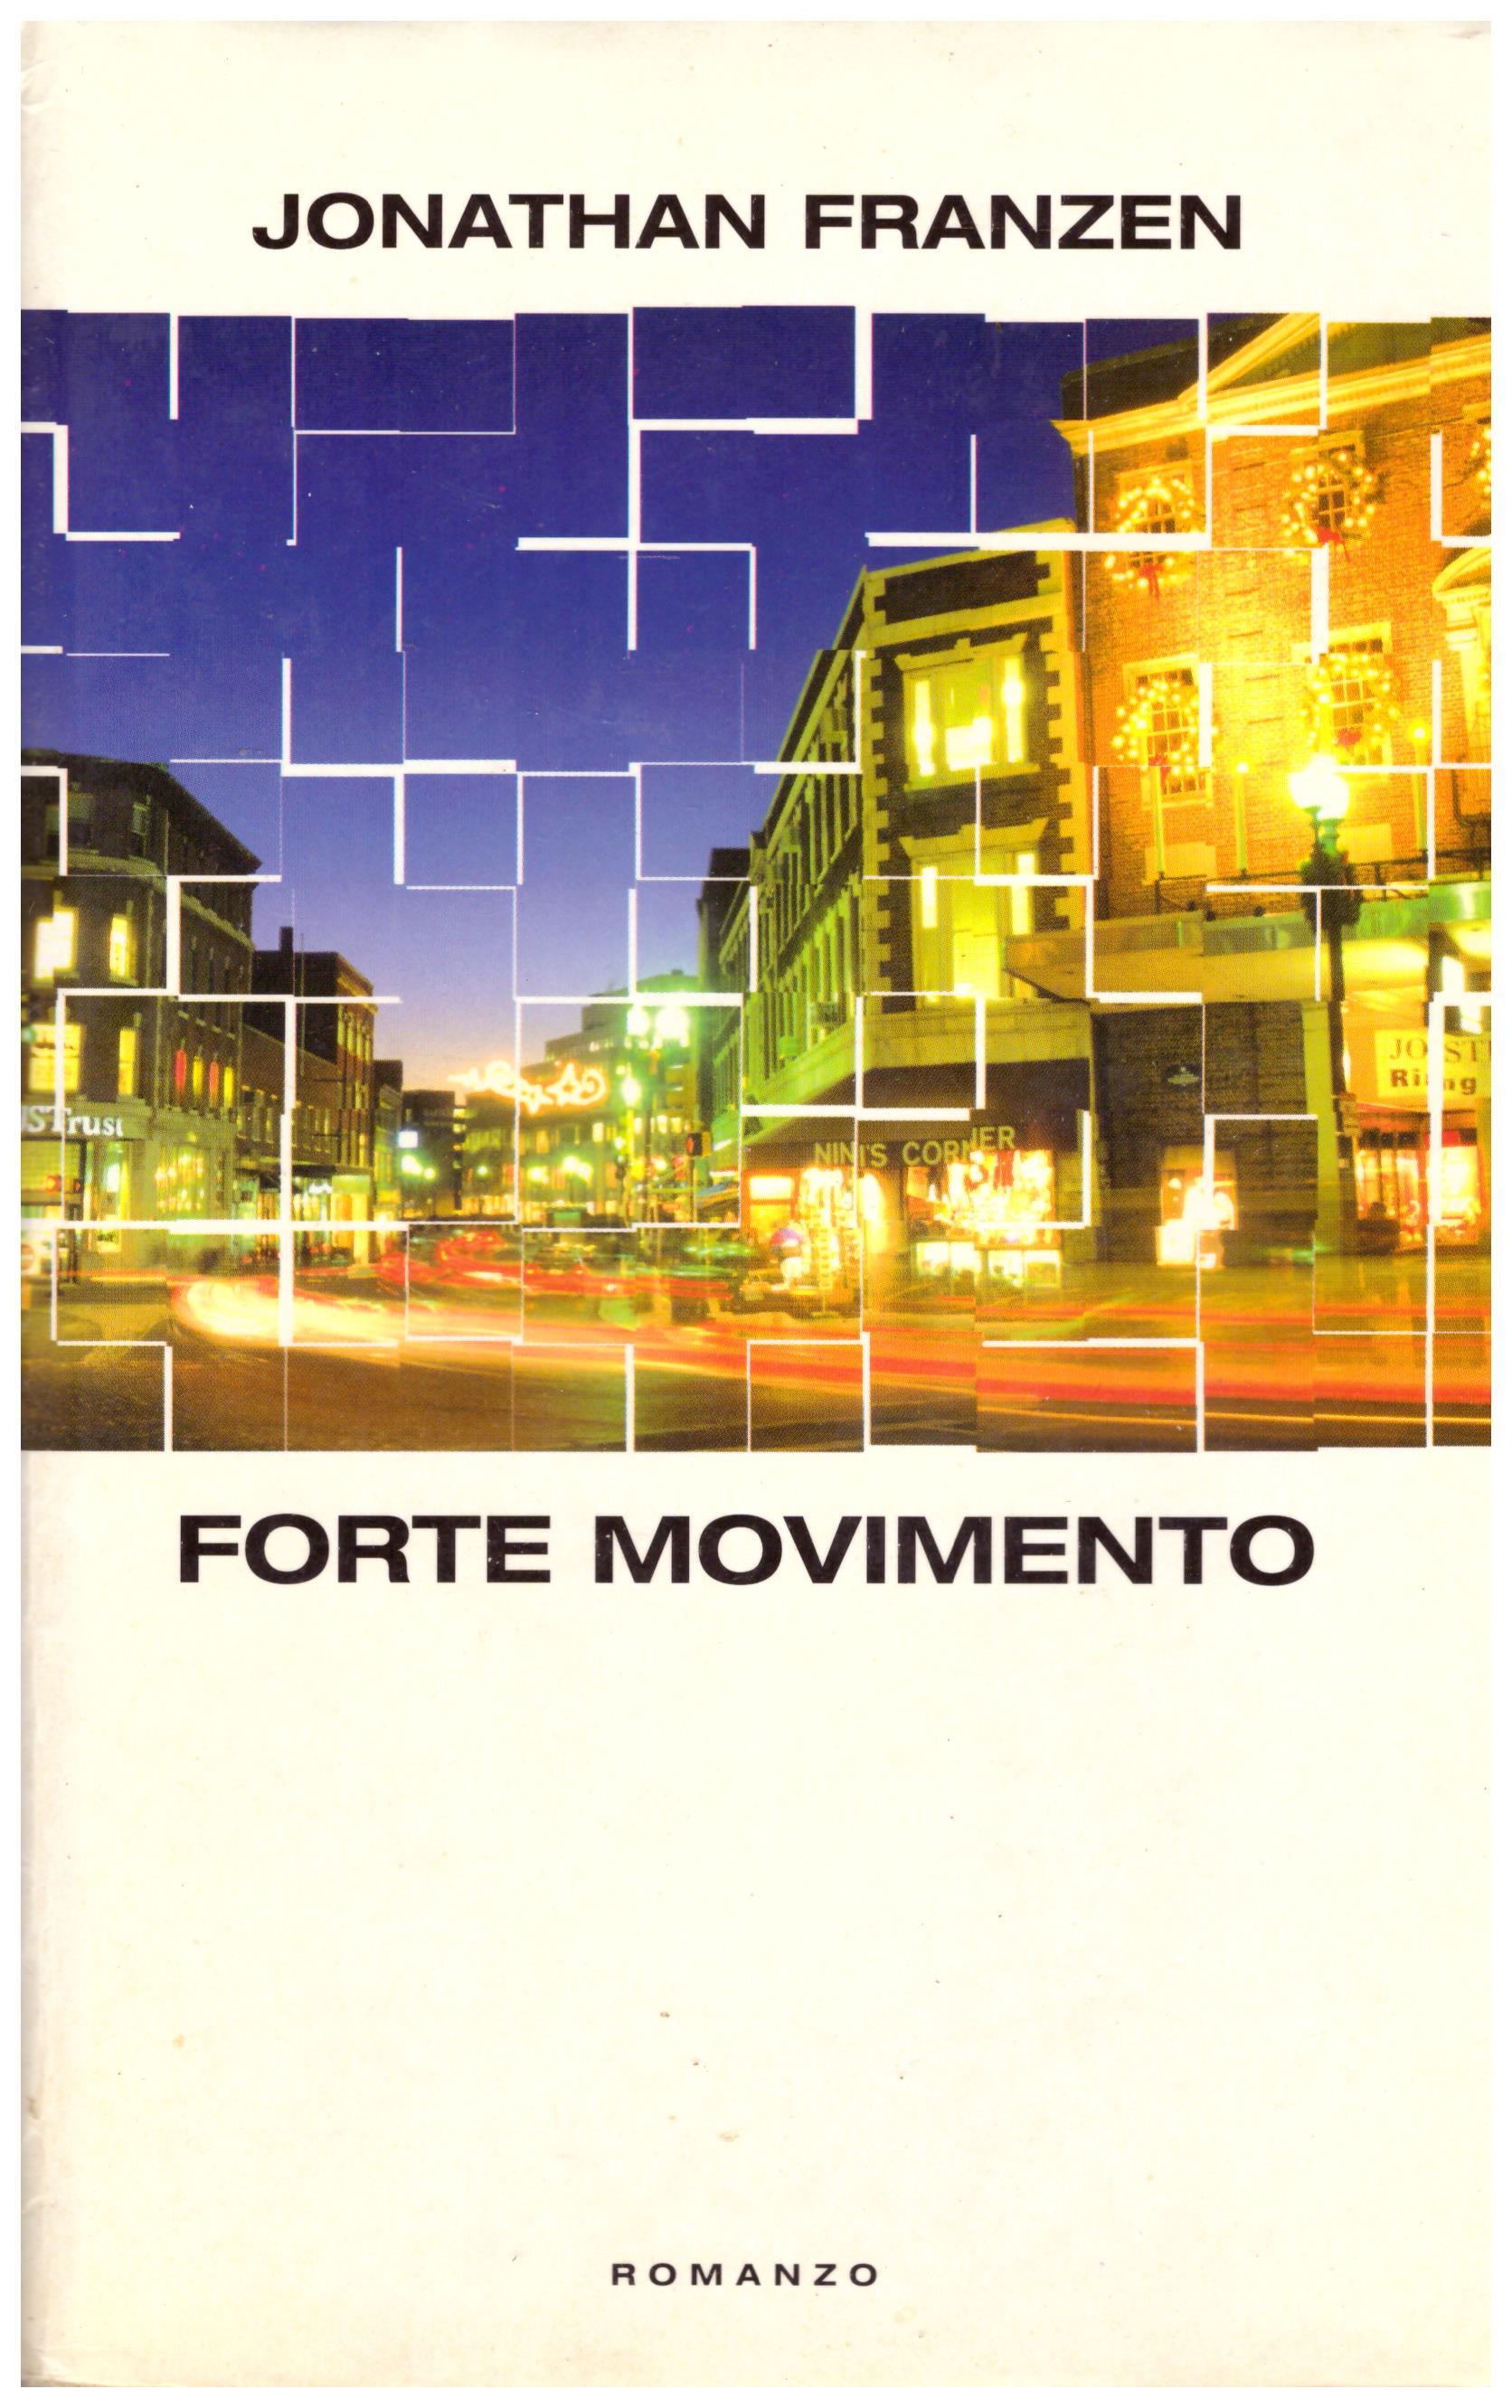 Titolo: Forte movimento Autore: Jonathan Franzen Editore: Einaudi, 1990